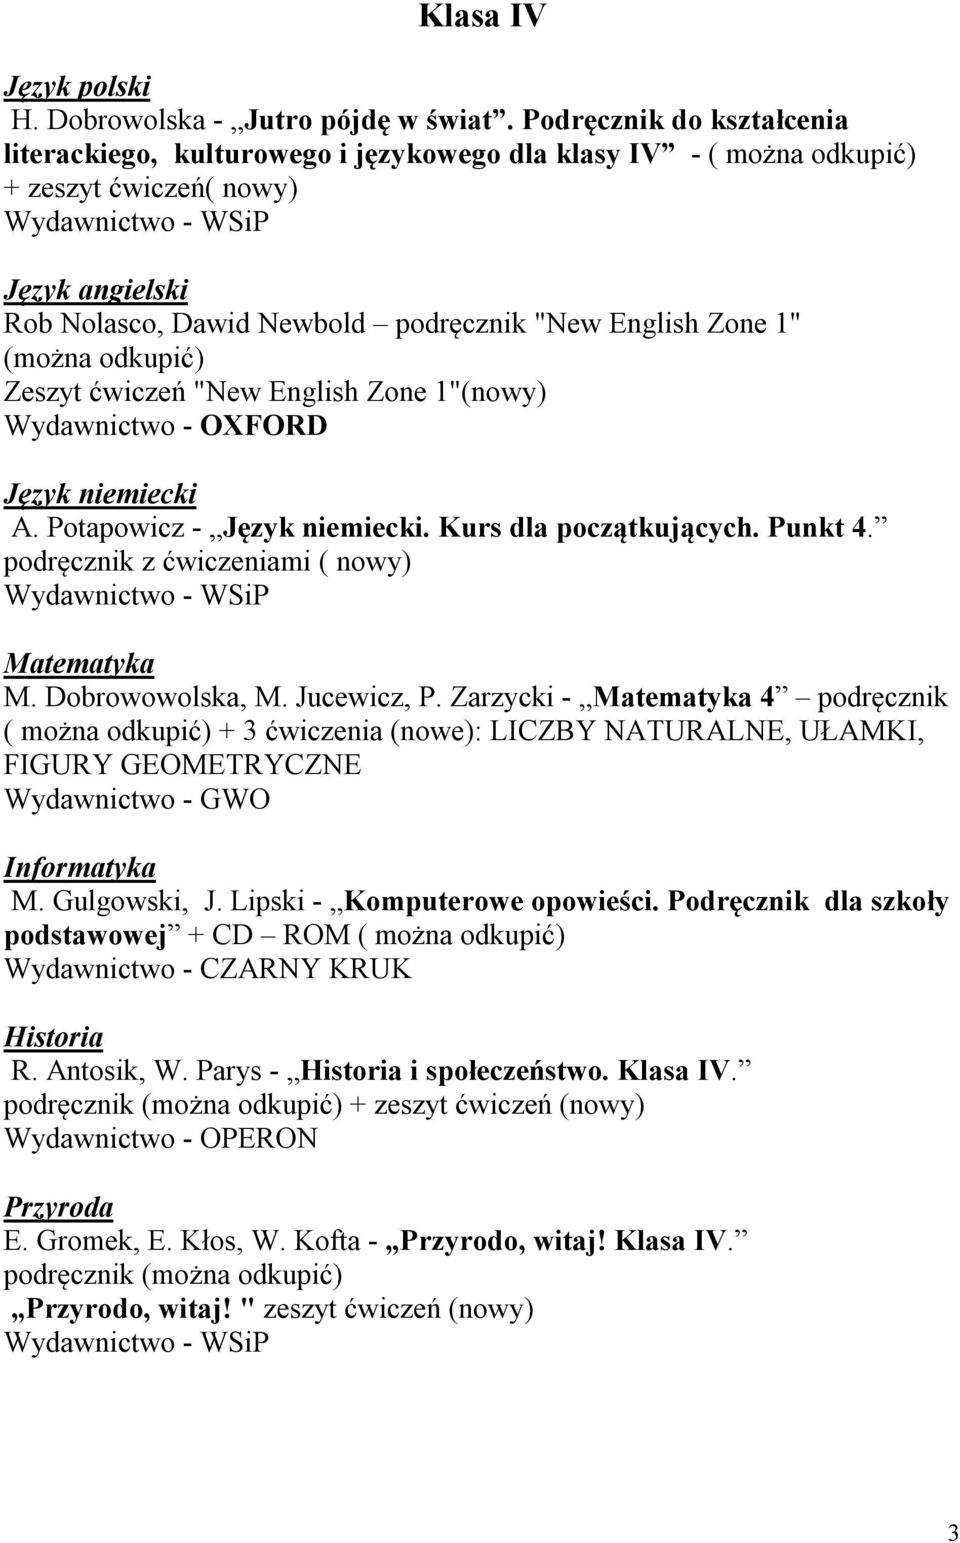 Zeszyt ćwiczeń "New English Zone 1"(nowy) Język niemiecki A. Potapowicz - Język niemiecki. Kurs dla początkujących. Punkt 4. podręcznik z ćwiczeniami ( nowy) Matematyka M. Dobrowowolska, M.